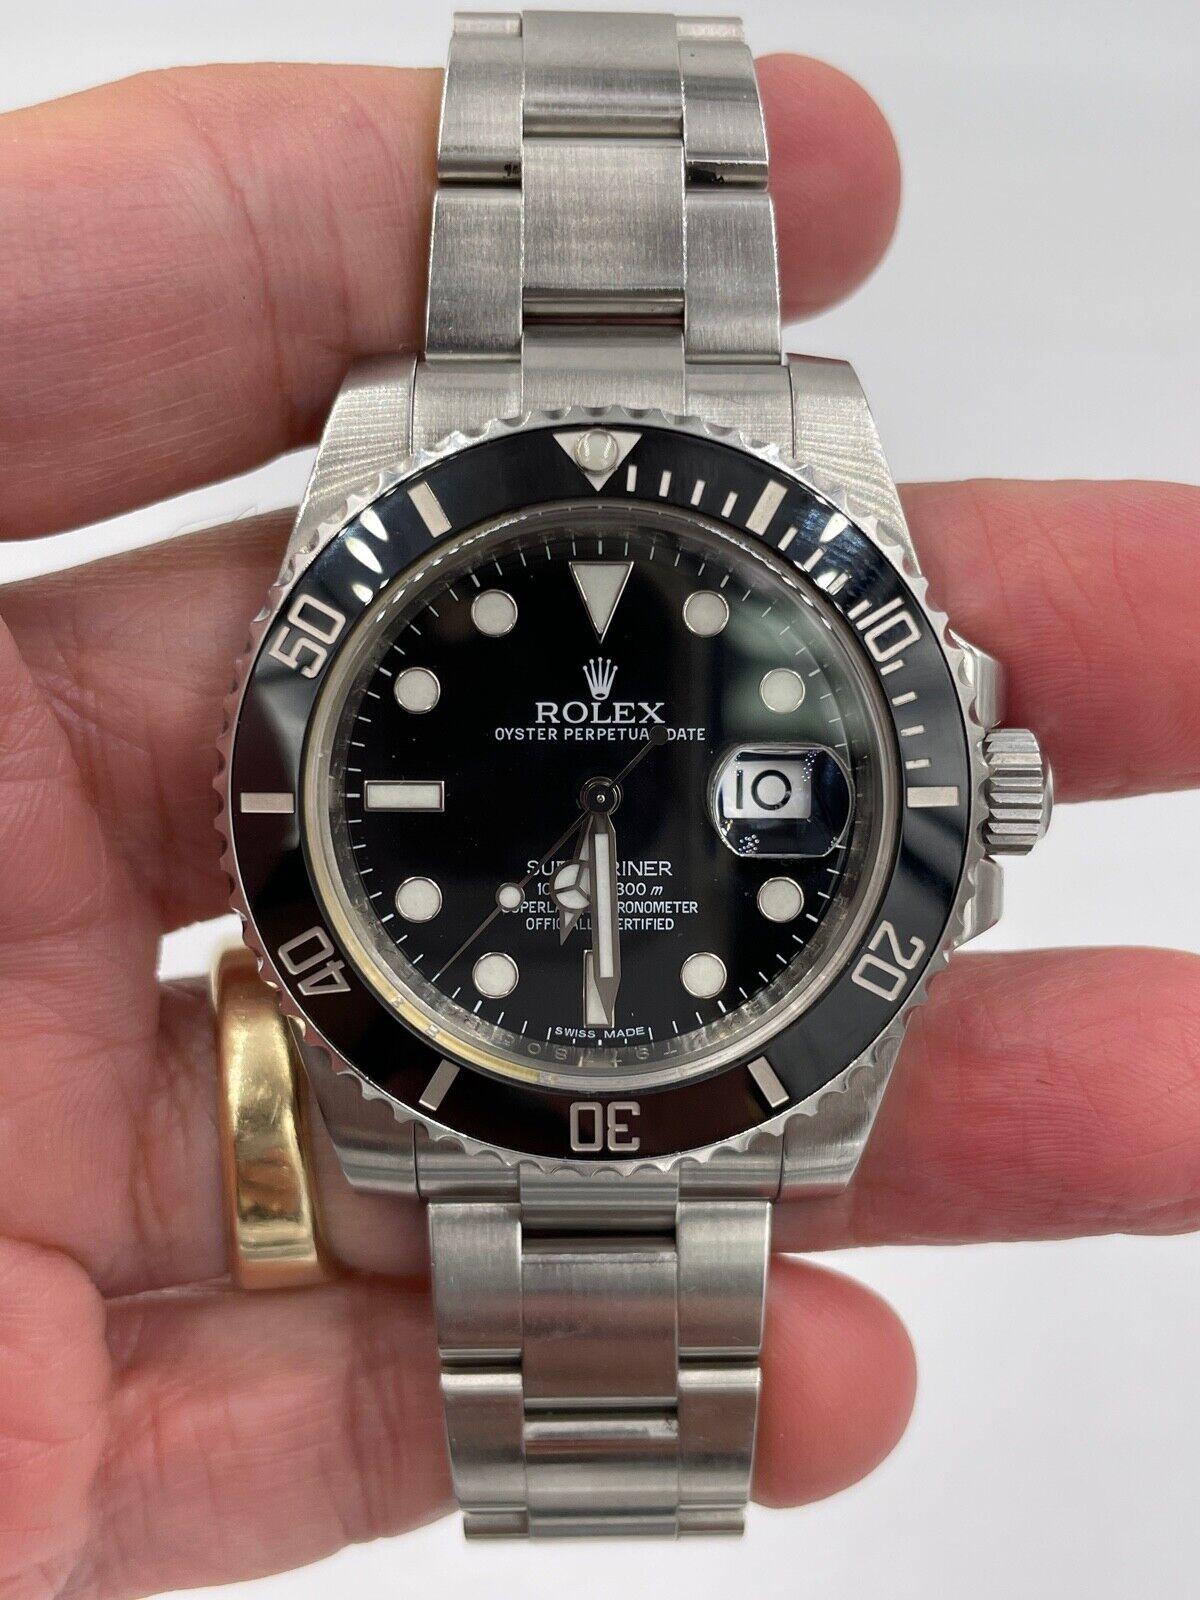 Rolex Submariner 116610 Oyster Perpetual Date Stainless Steel Wristwatch 2015.

À PROPOS DE CET ARTICLE : Rolex Submariner Cadran et lunette noirs en acier inoxydable 40mm. Cette montre est en très bon état, non polie, avec des signes d'usure